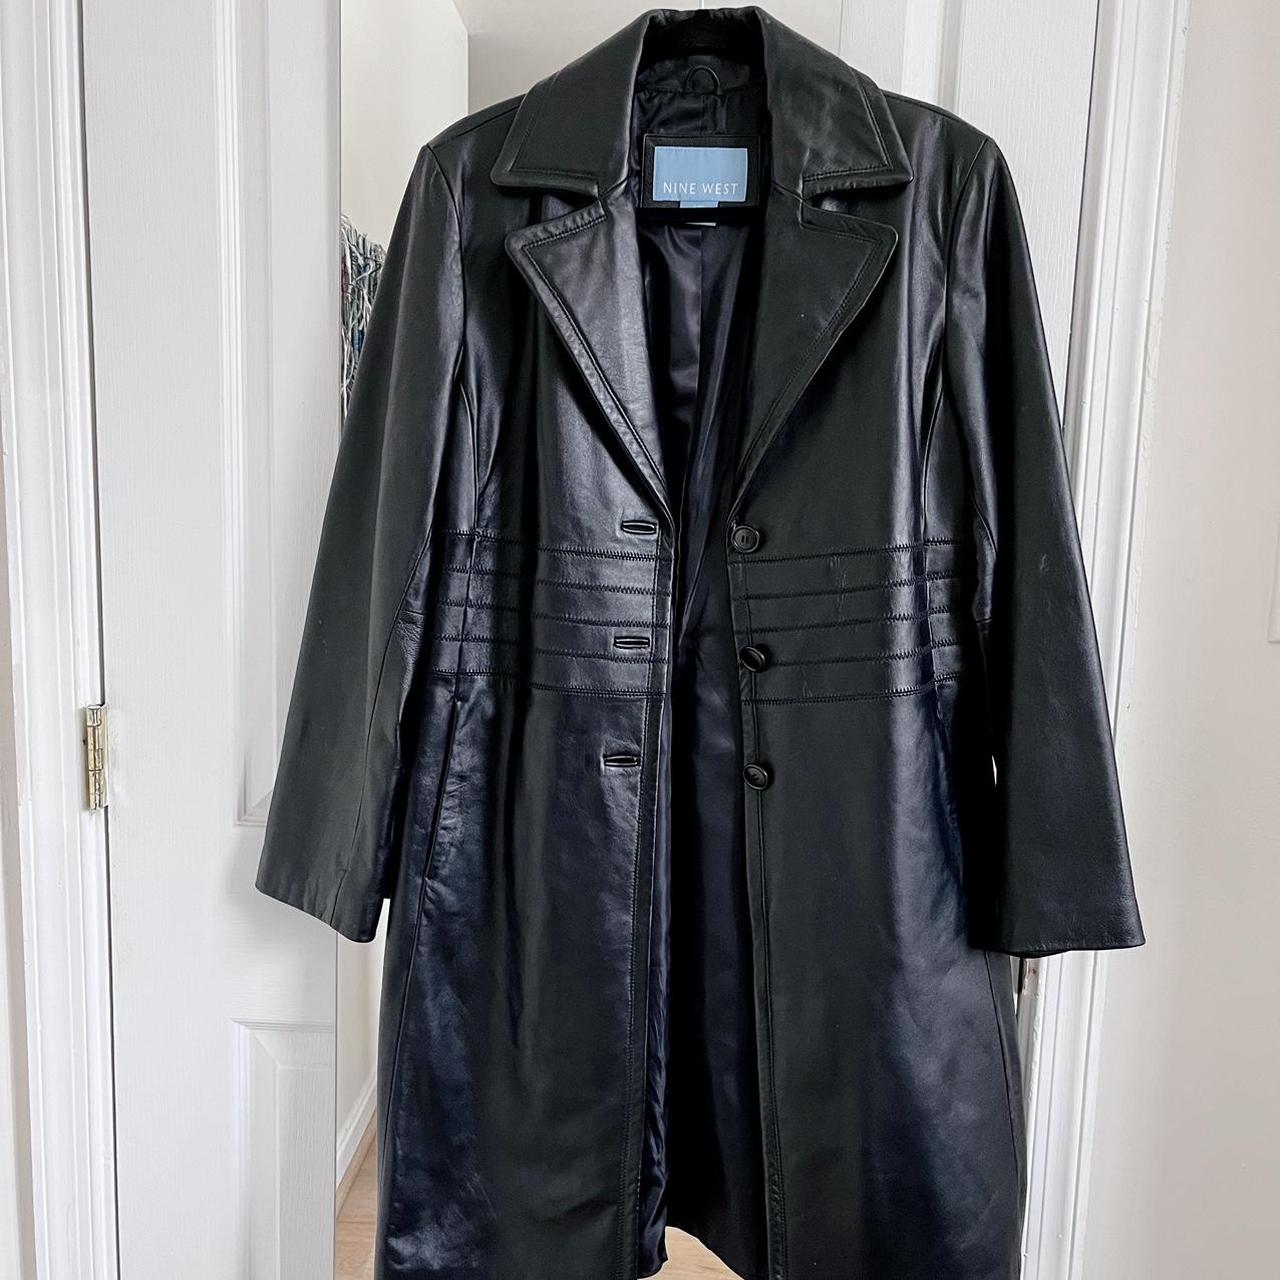 Perfect Nine West Leather Jacket Coat Amazing... - Depop